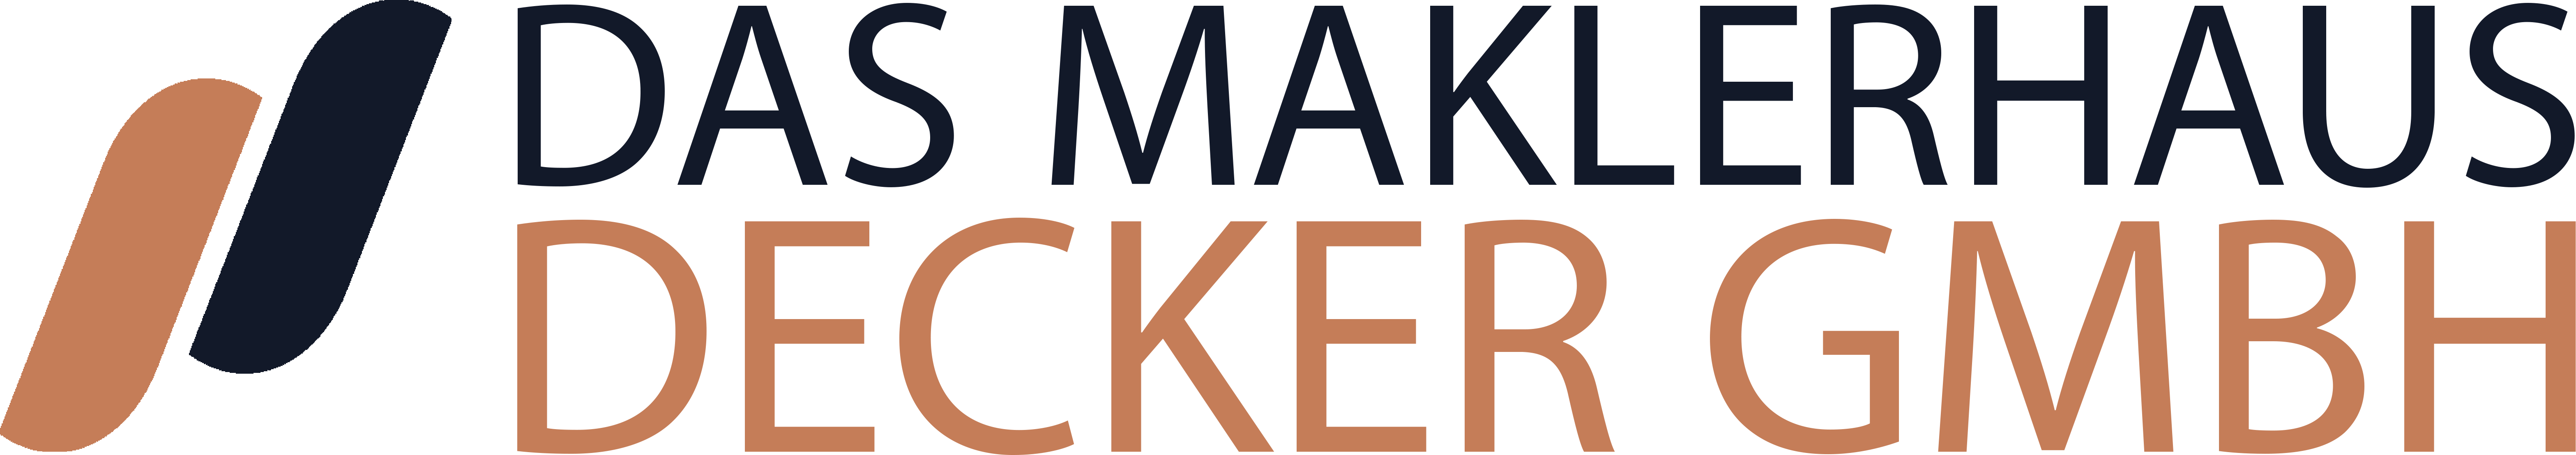 Das Maklerhaus Decker GmbH